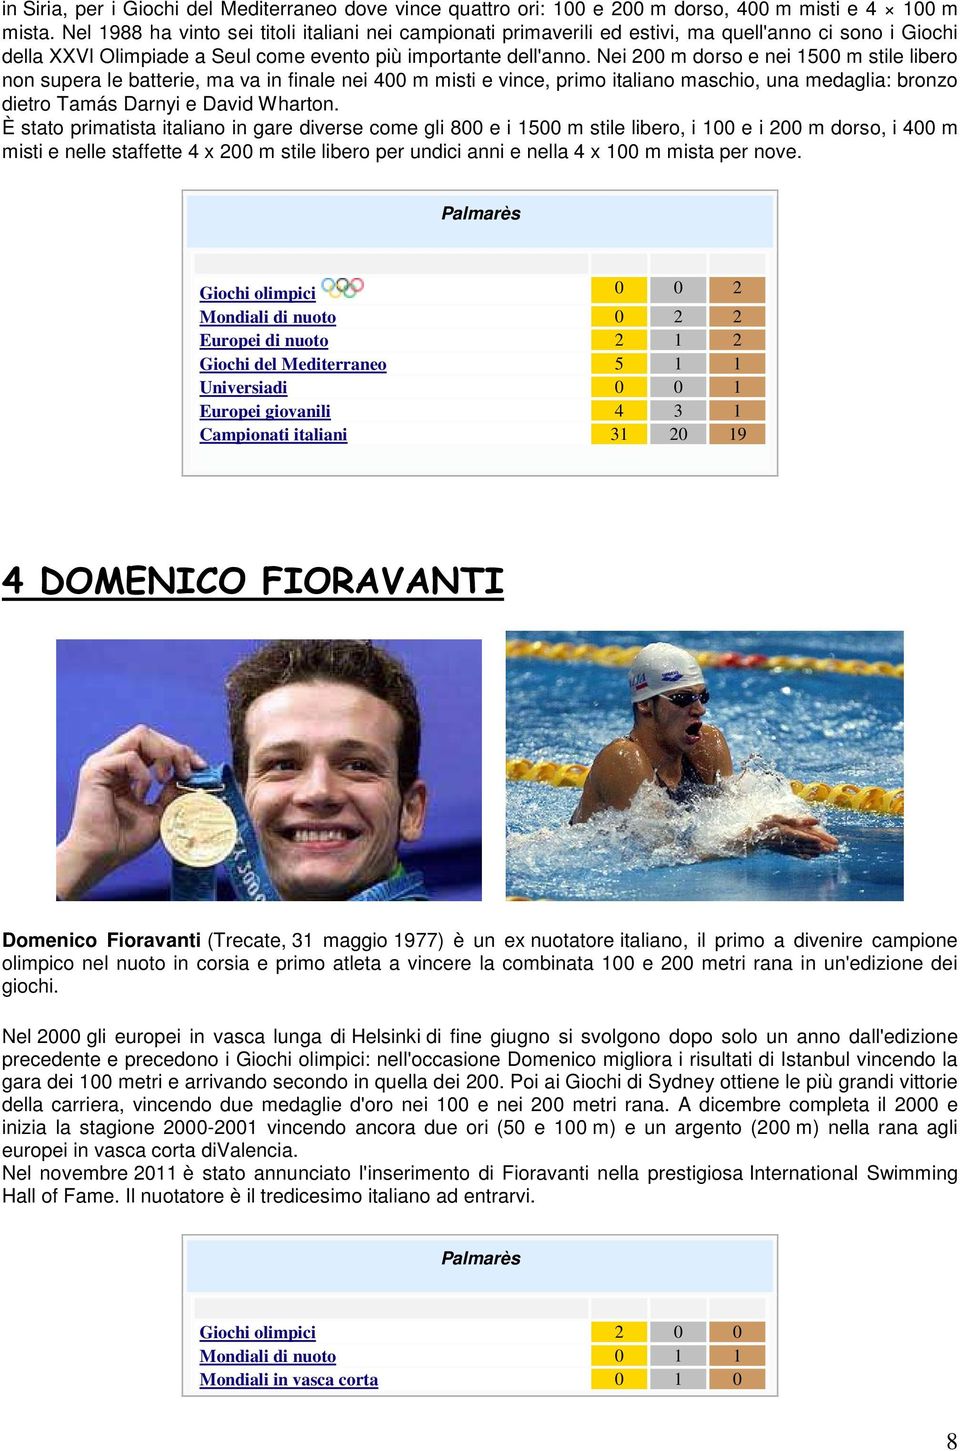 Nei 200 m dorso e nei 1500 m stile libero non supera le batterie, ma va in finale nei 400 m misti e vince, primo italiano maschio, una medaglia: bronzo dietro Tamás Darnyi e David Wharton.